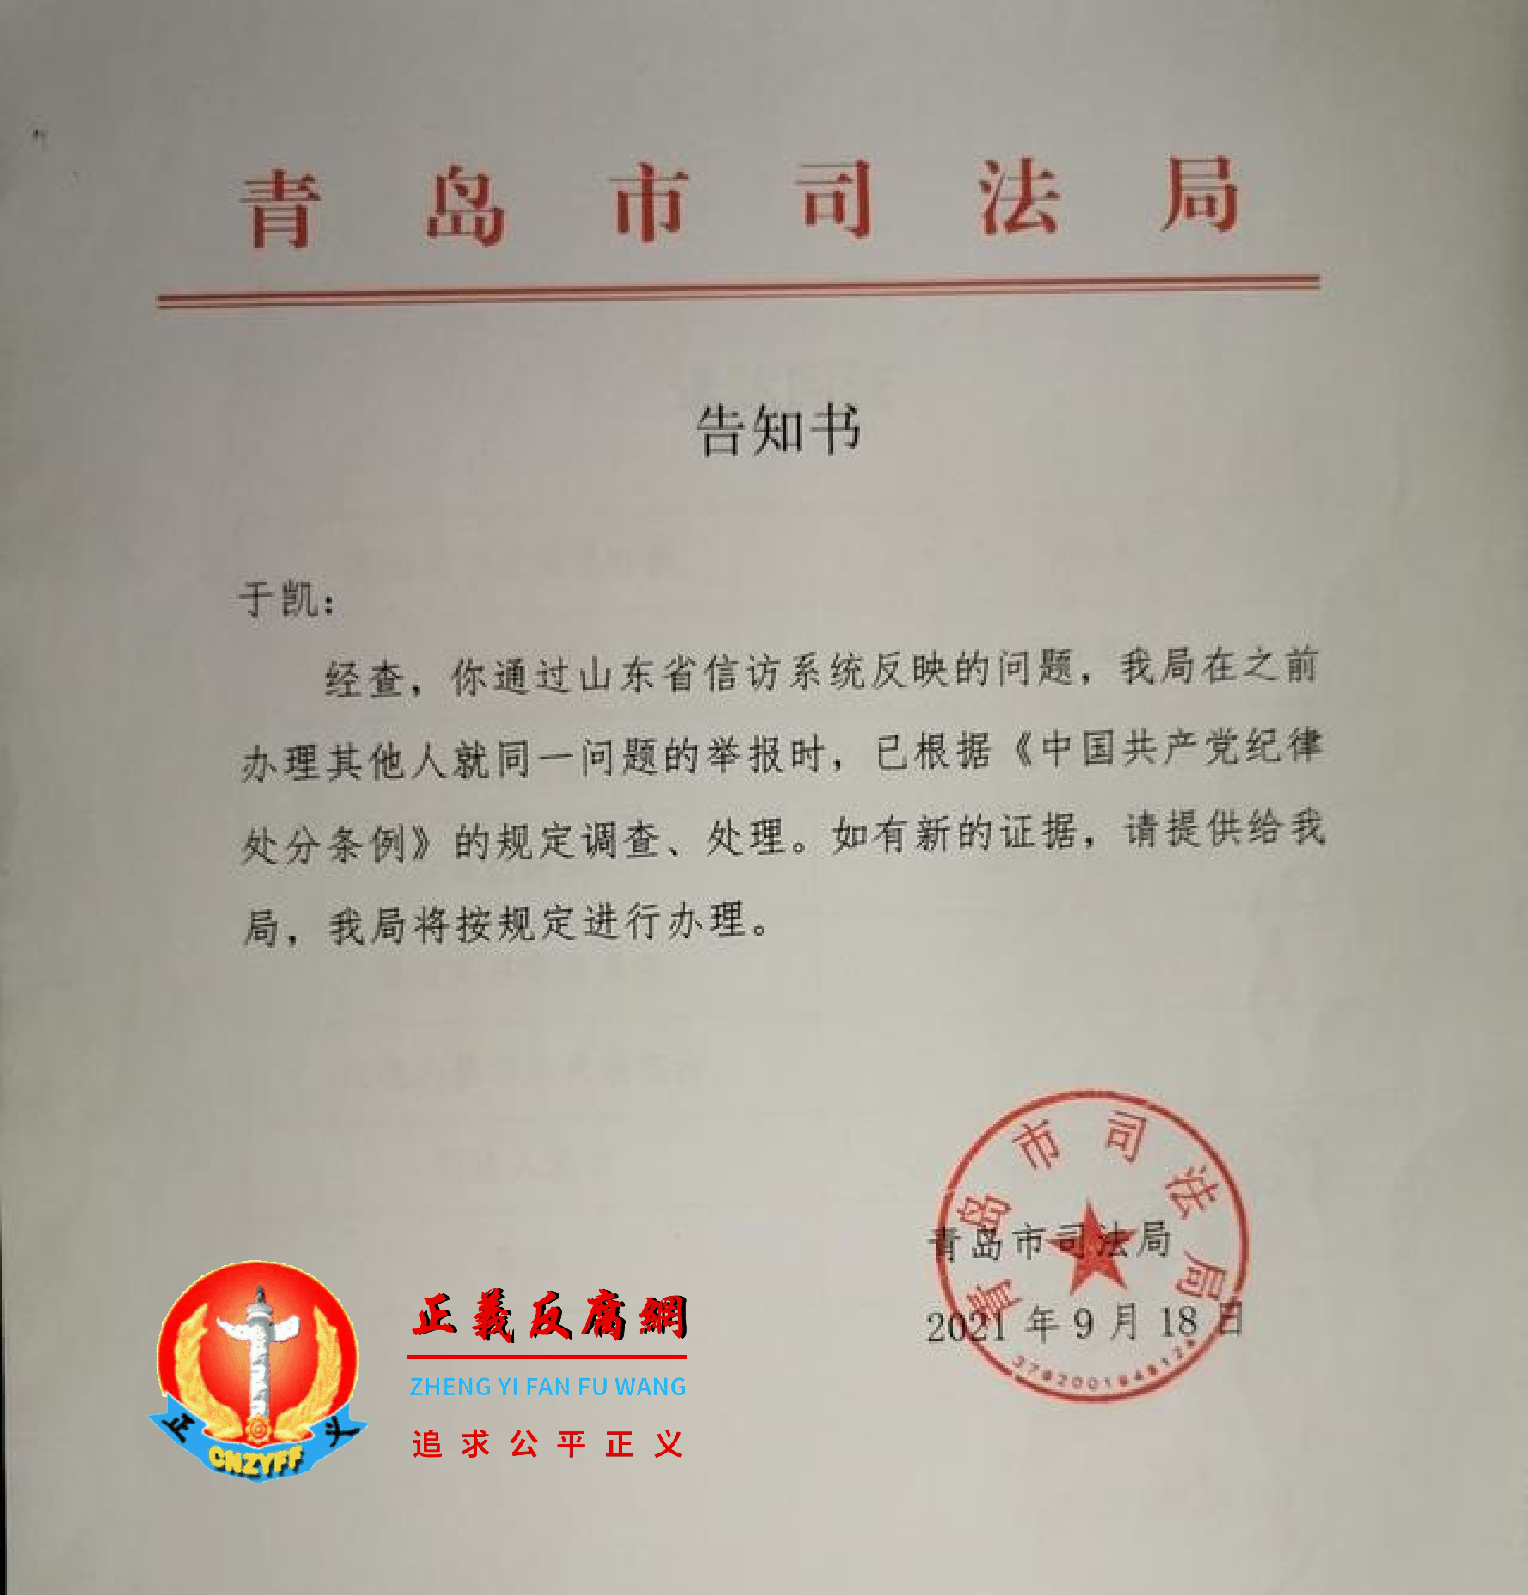 2021年9月18日，青岛市司法局告知举报人，已根据党纪规定，对张金海举报事项调查、处理。.png